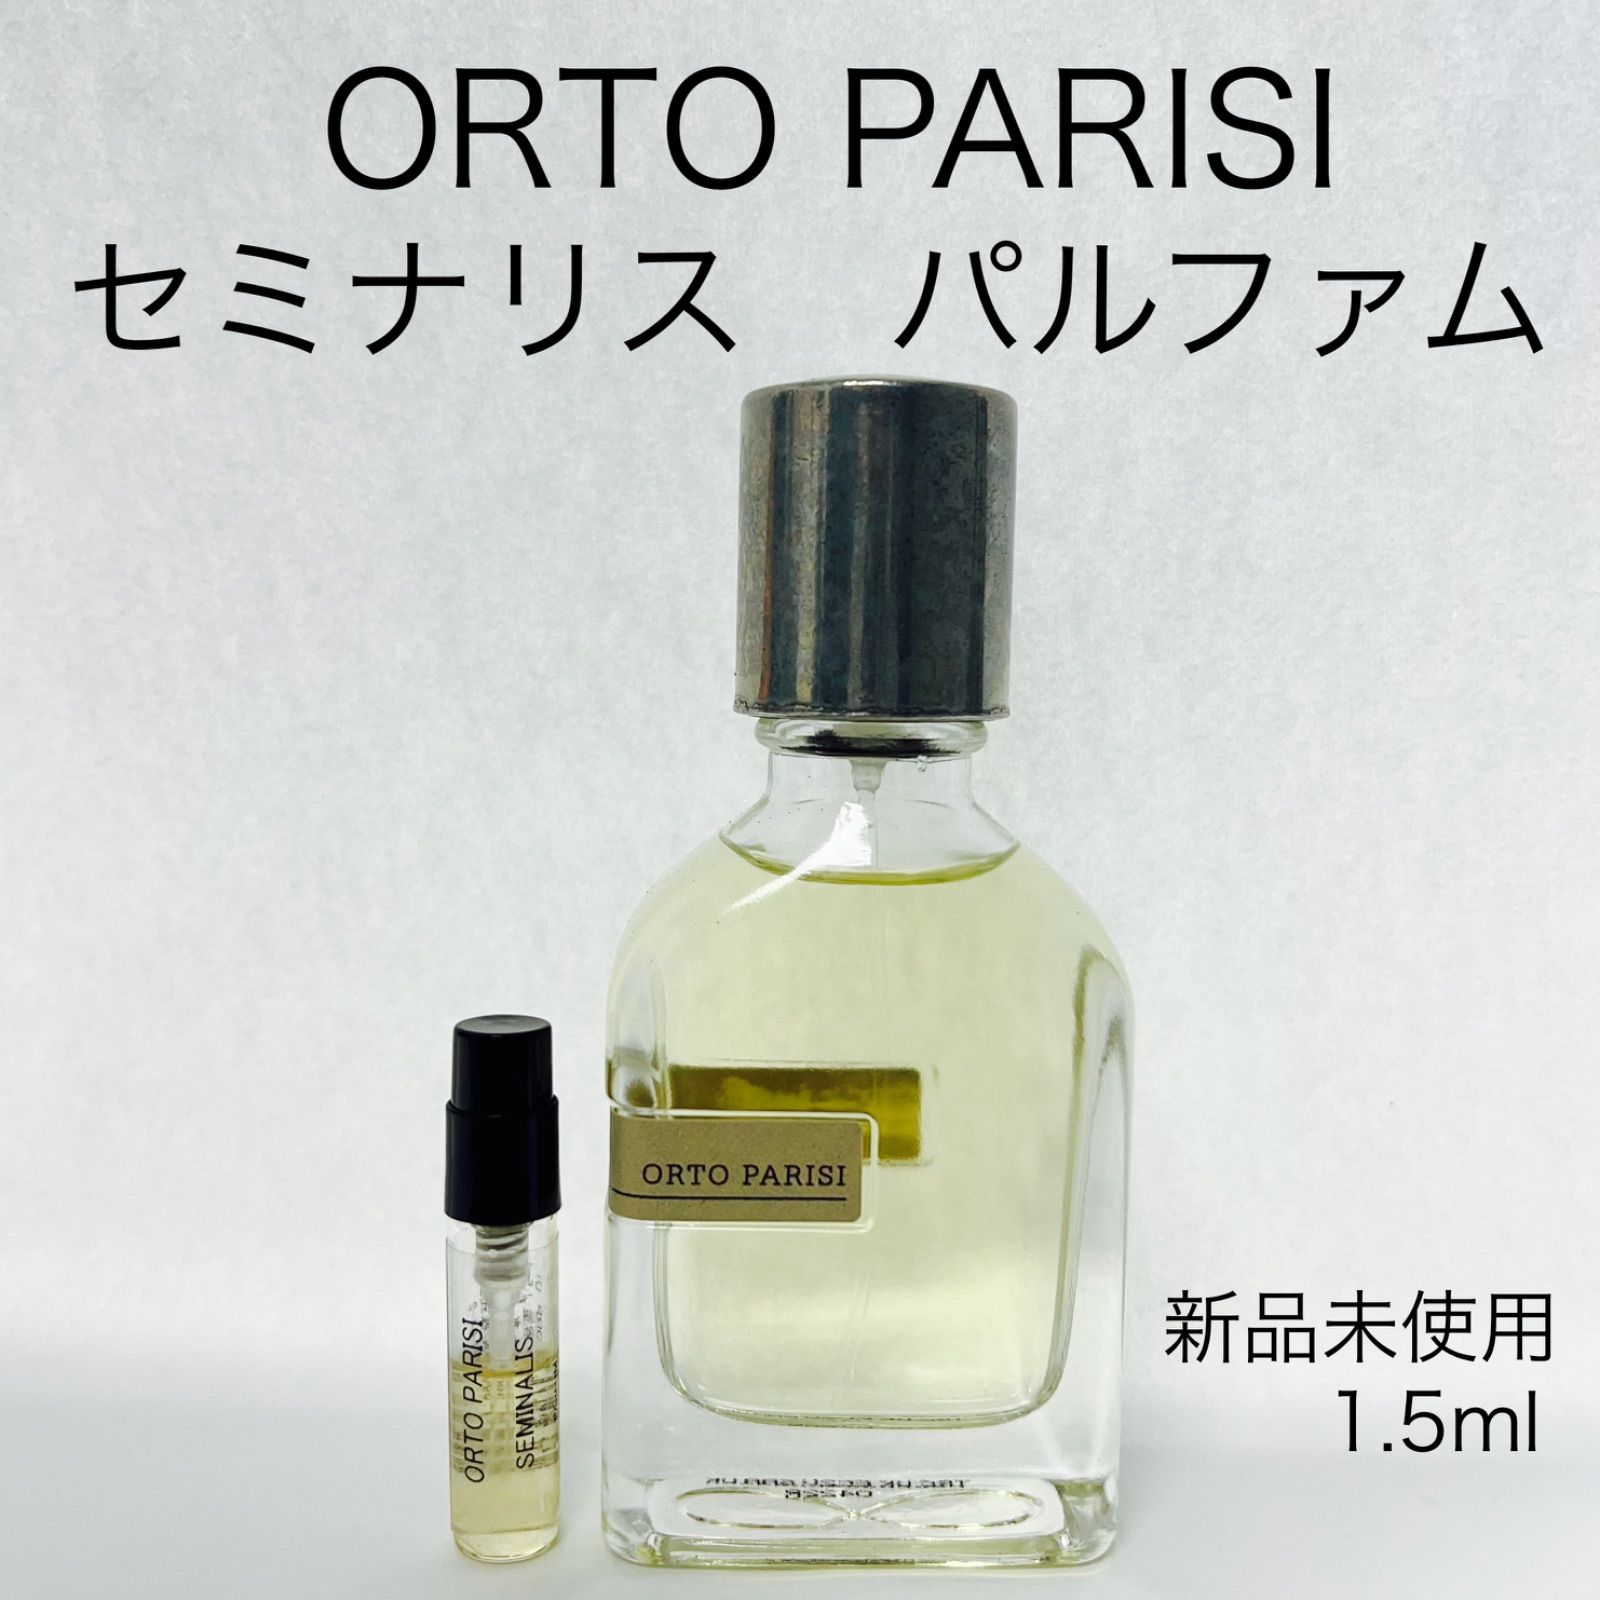 ORTO PARISI(オルトパリージ) セミナリス - 香水